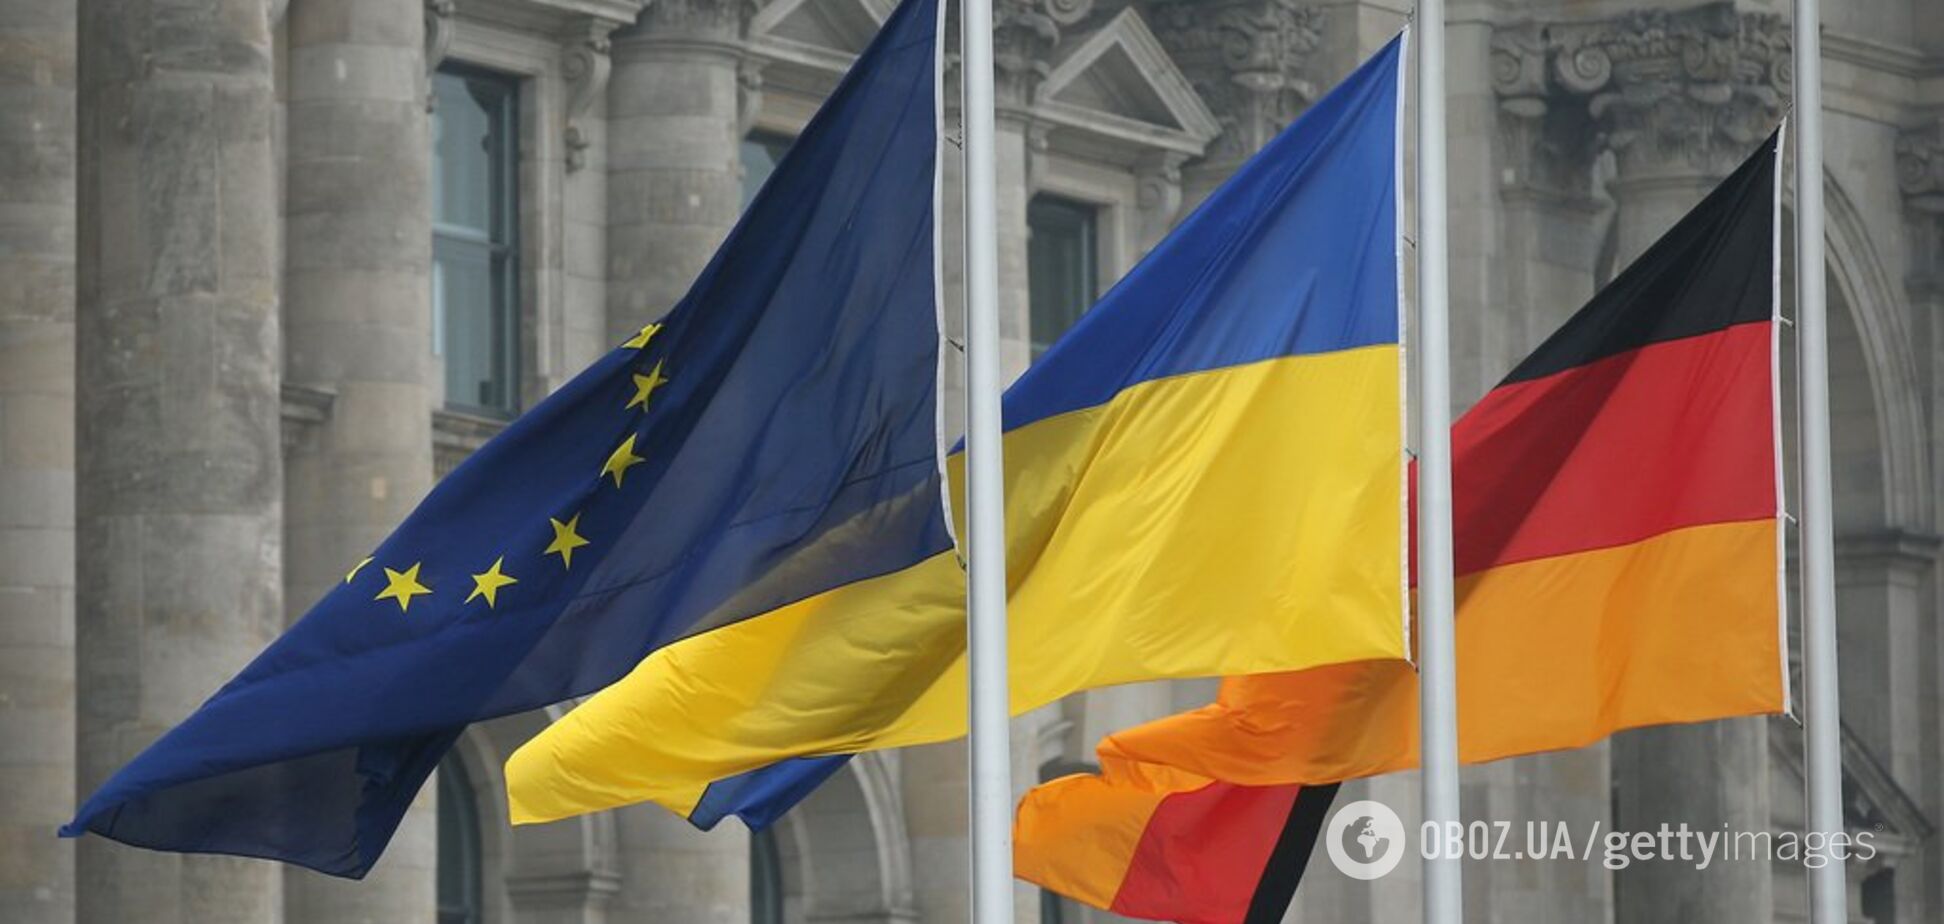 Германия дала Украине сотни тысяч евро: куда пойдут деньги